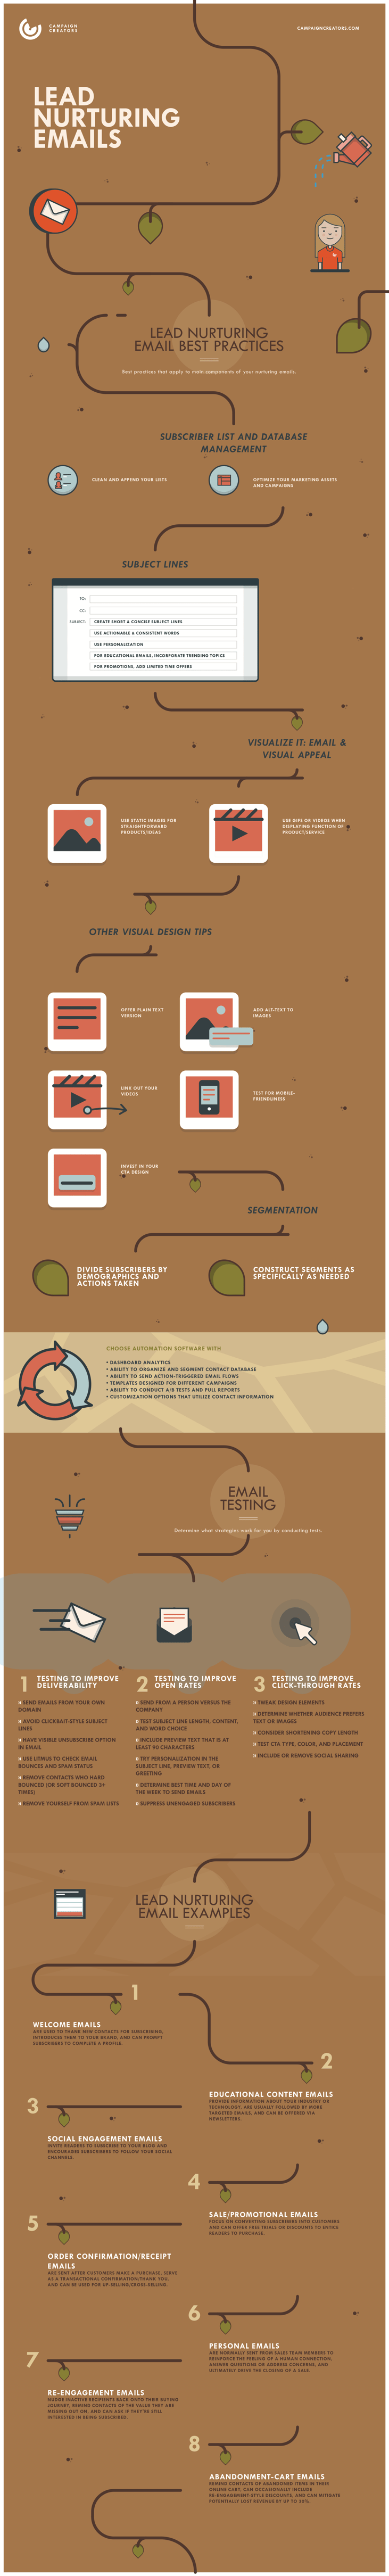 CC - Lead Nurturing Emails - Lesson 5 Infographic